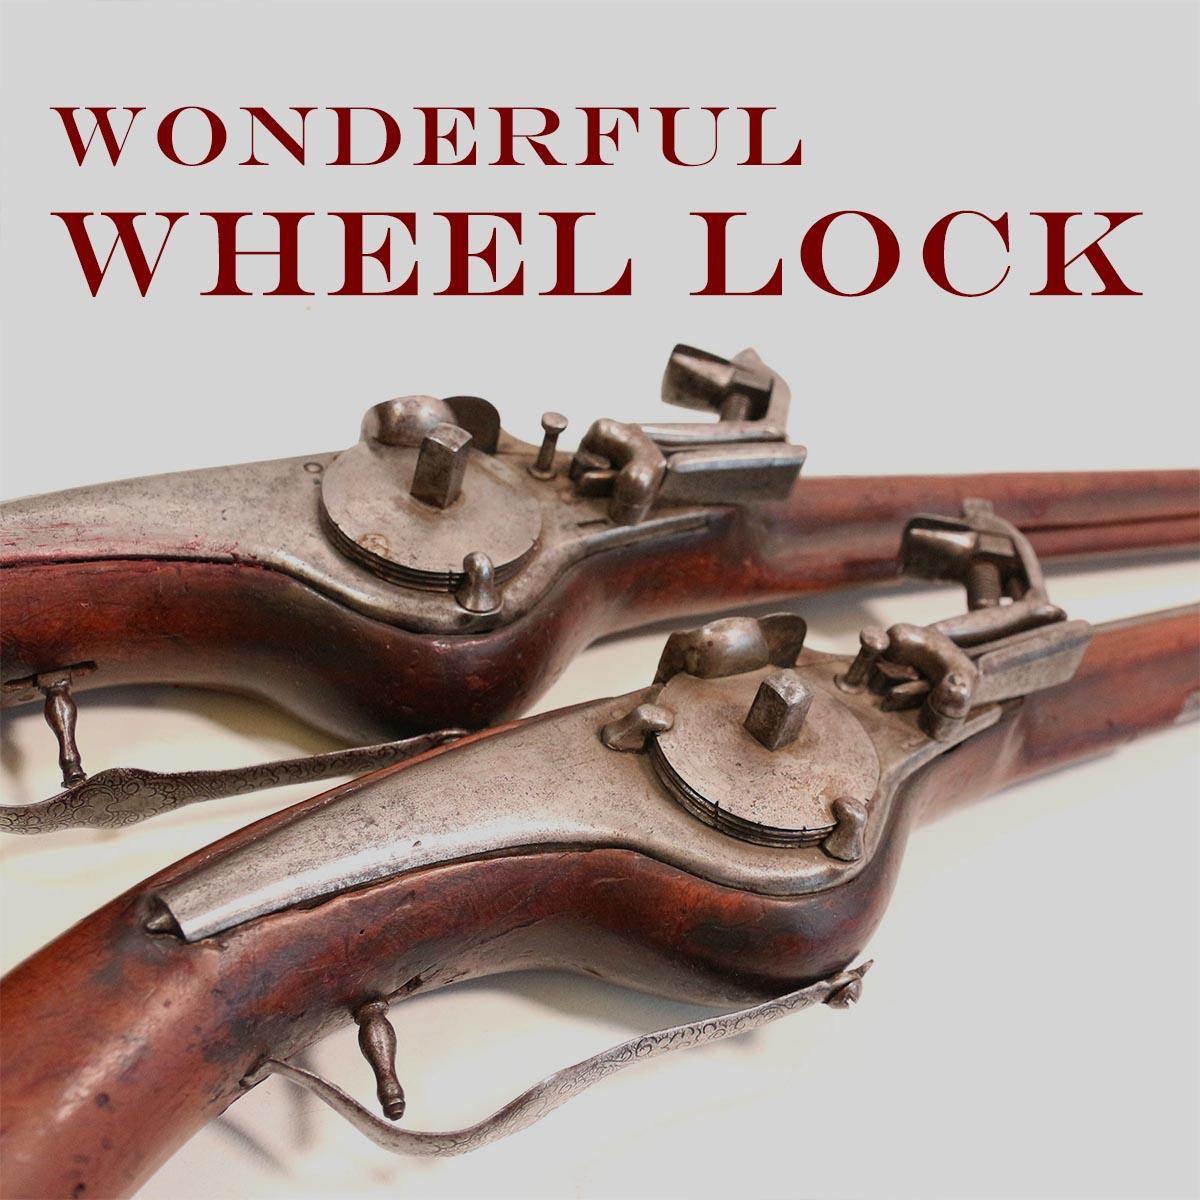 The Wonderful Wheellock